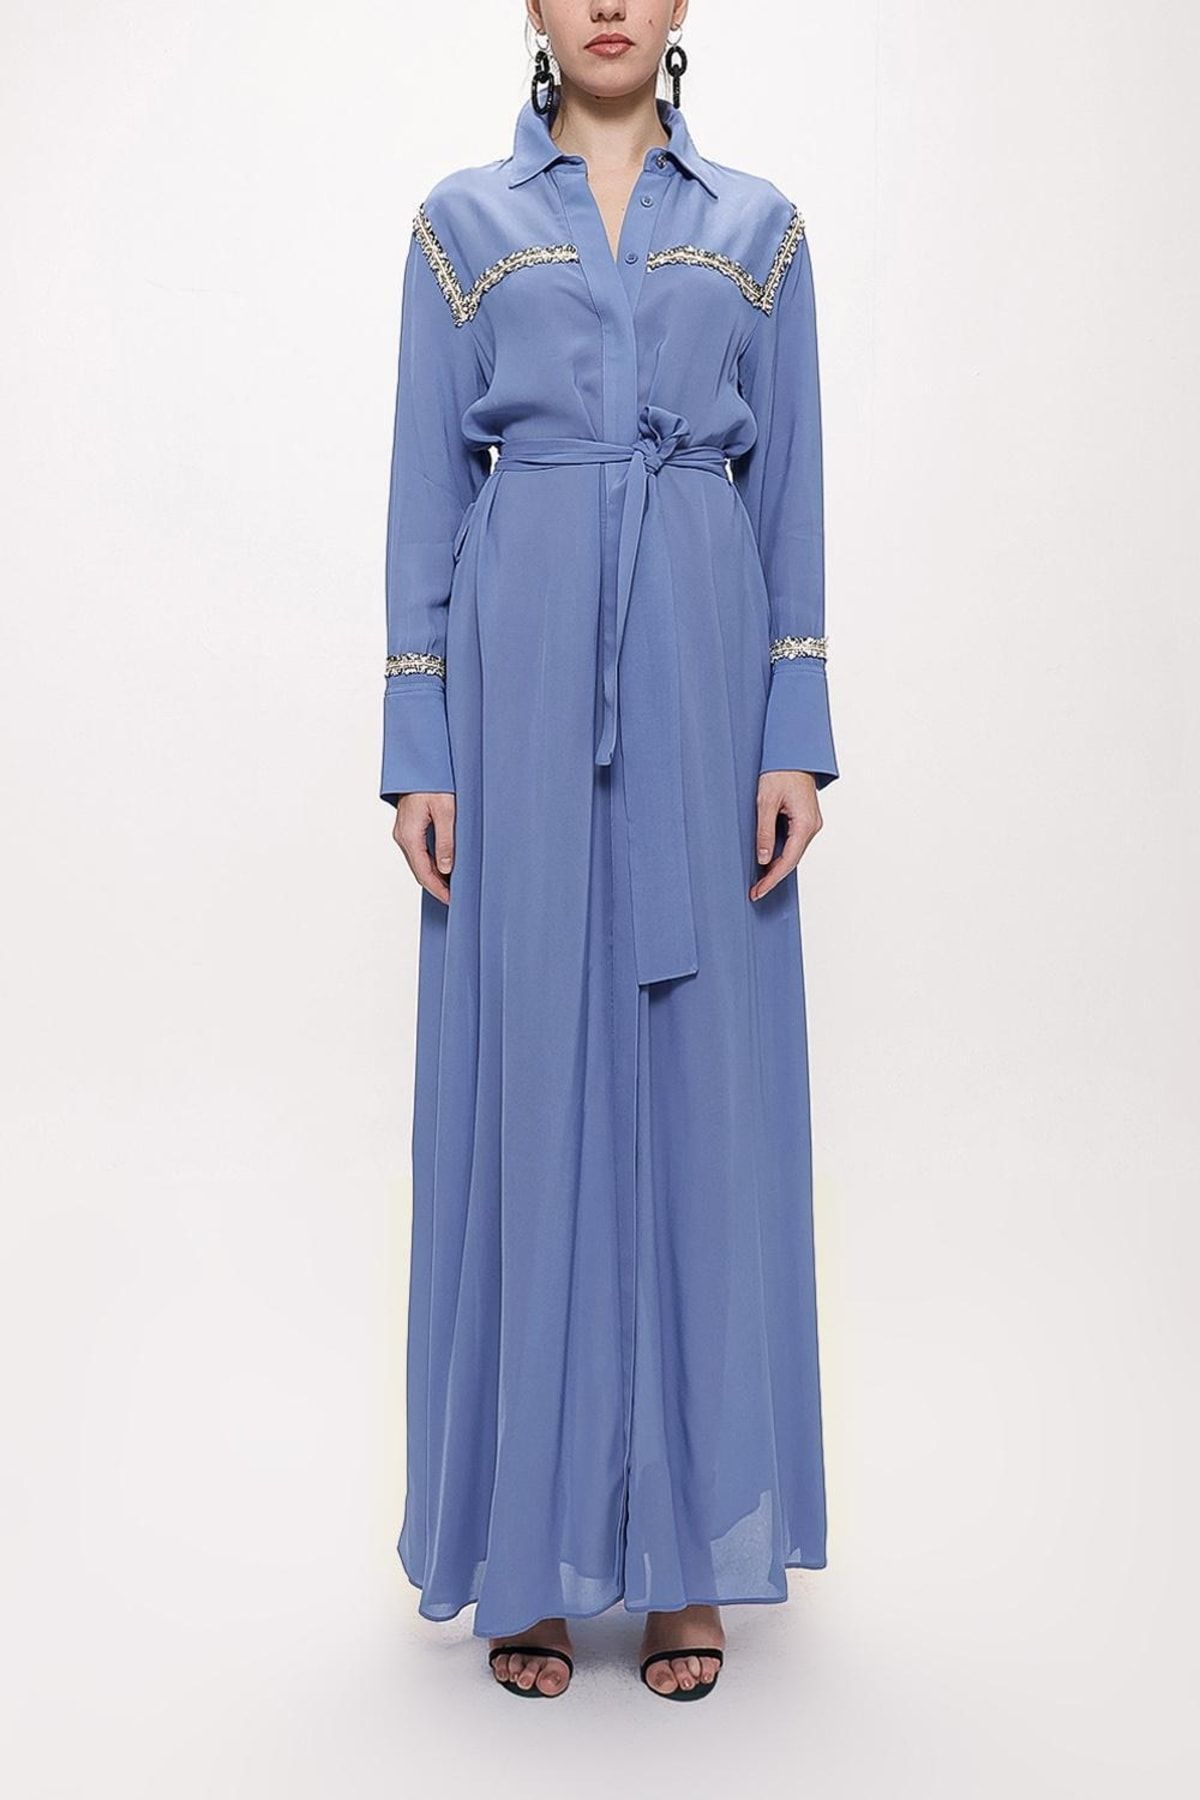 SOCIETA Mavi Şerit Aksesuarlı Kemerli Uzun Gömlek Elbise 94153